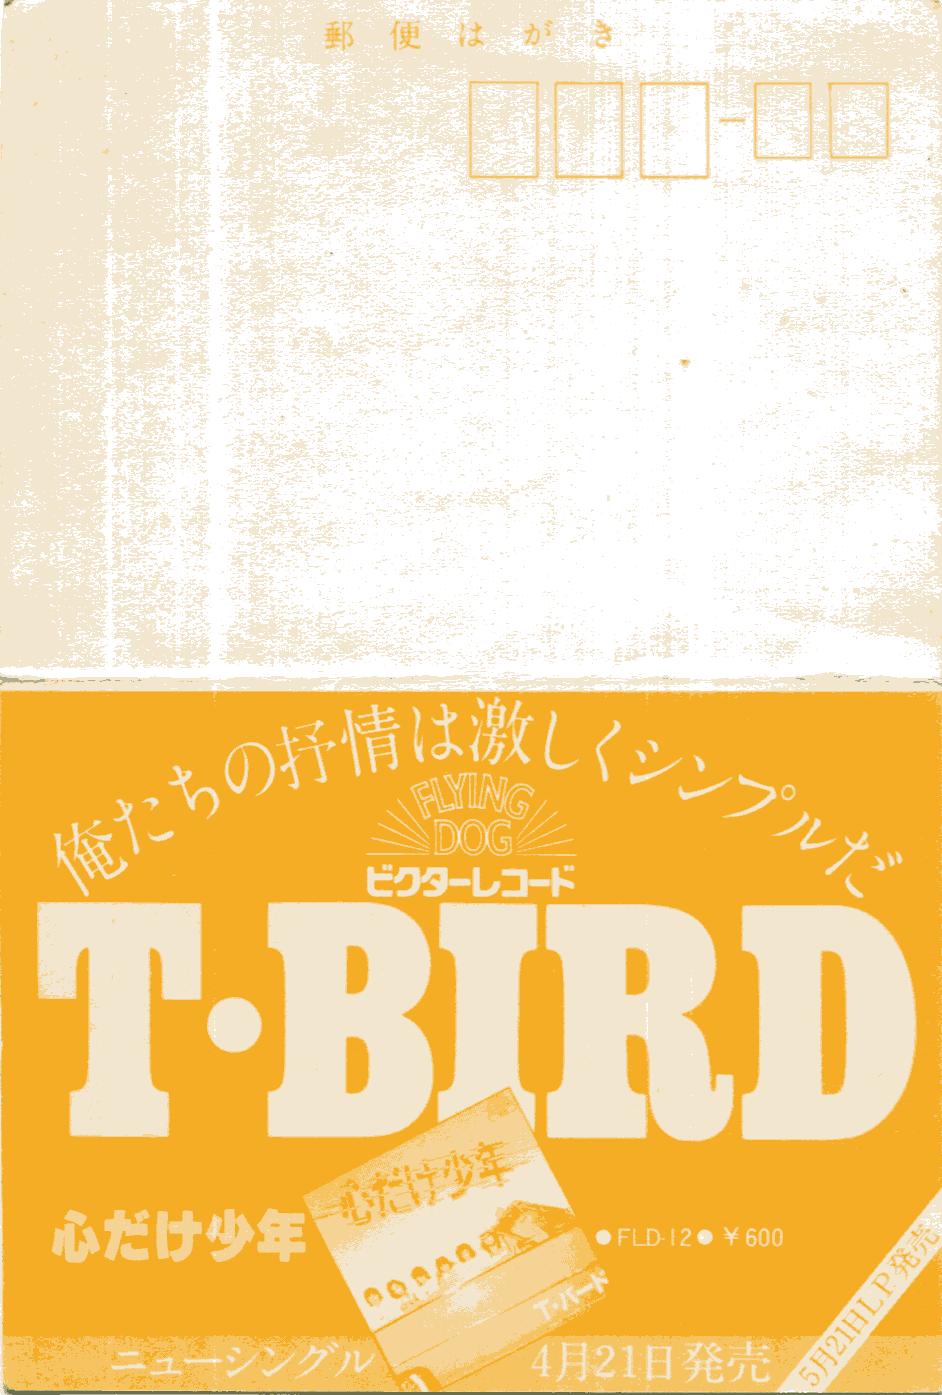 T-BIRDのコンサート招待券のはがき面(jpg,33.6k)